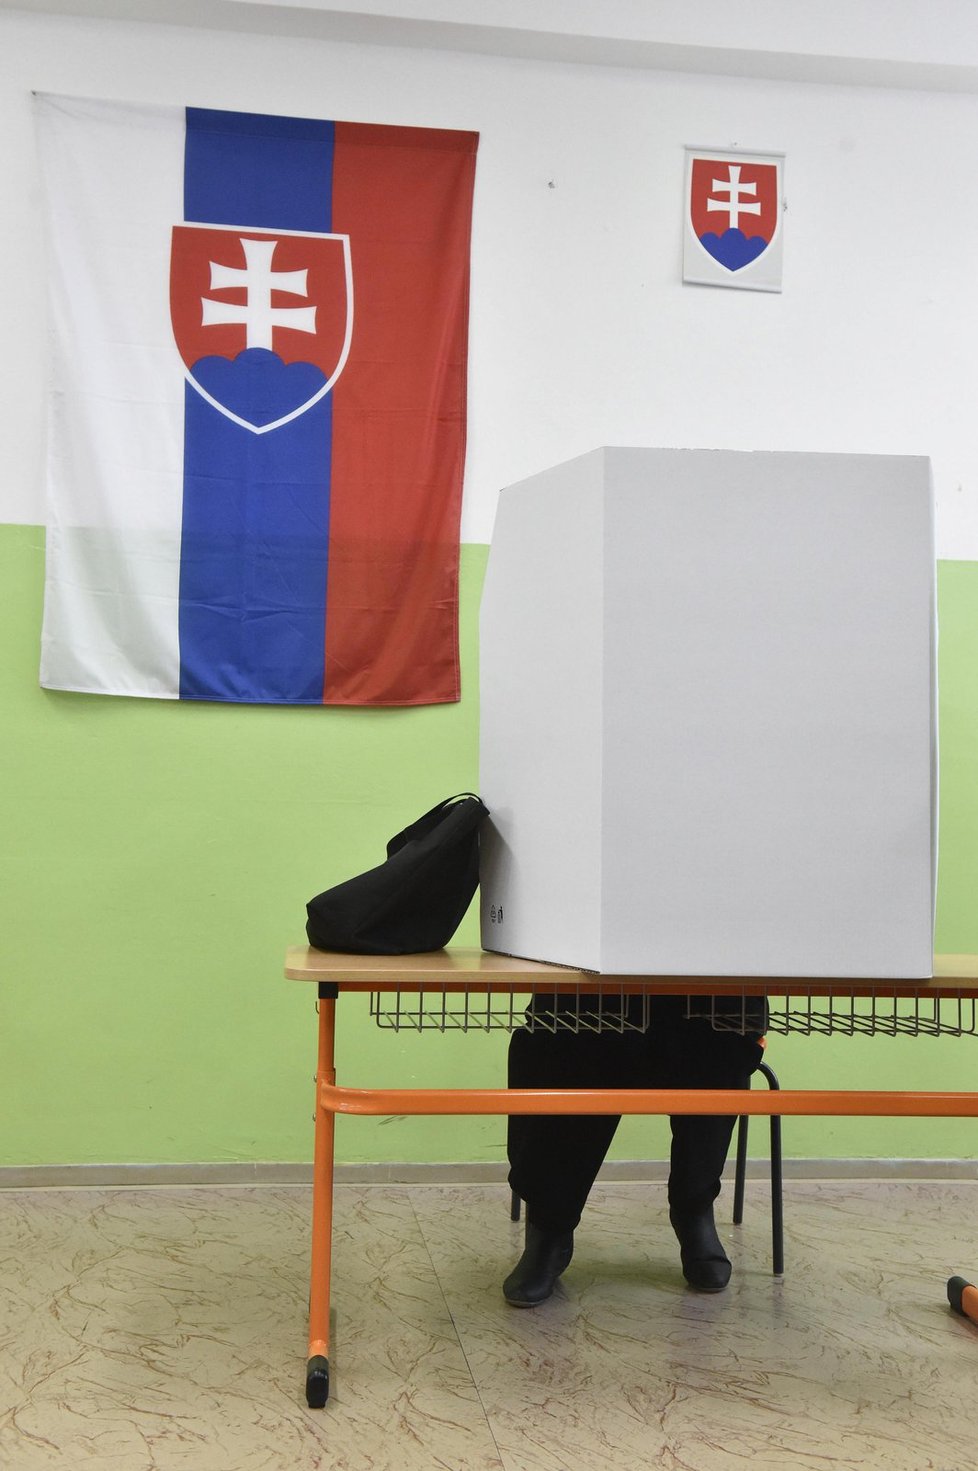 Parlamentní volby se konaly 5. března na Slovensku. Na snímku volební místnost v Trnavě.